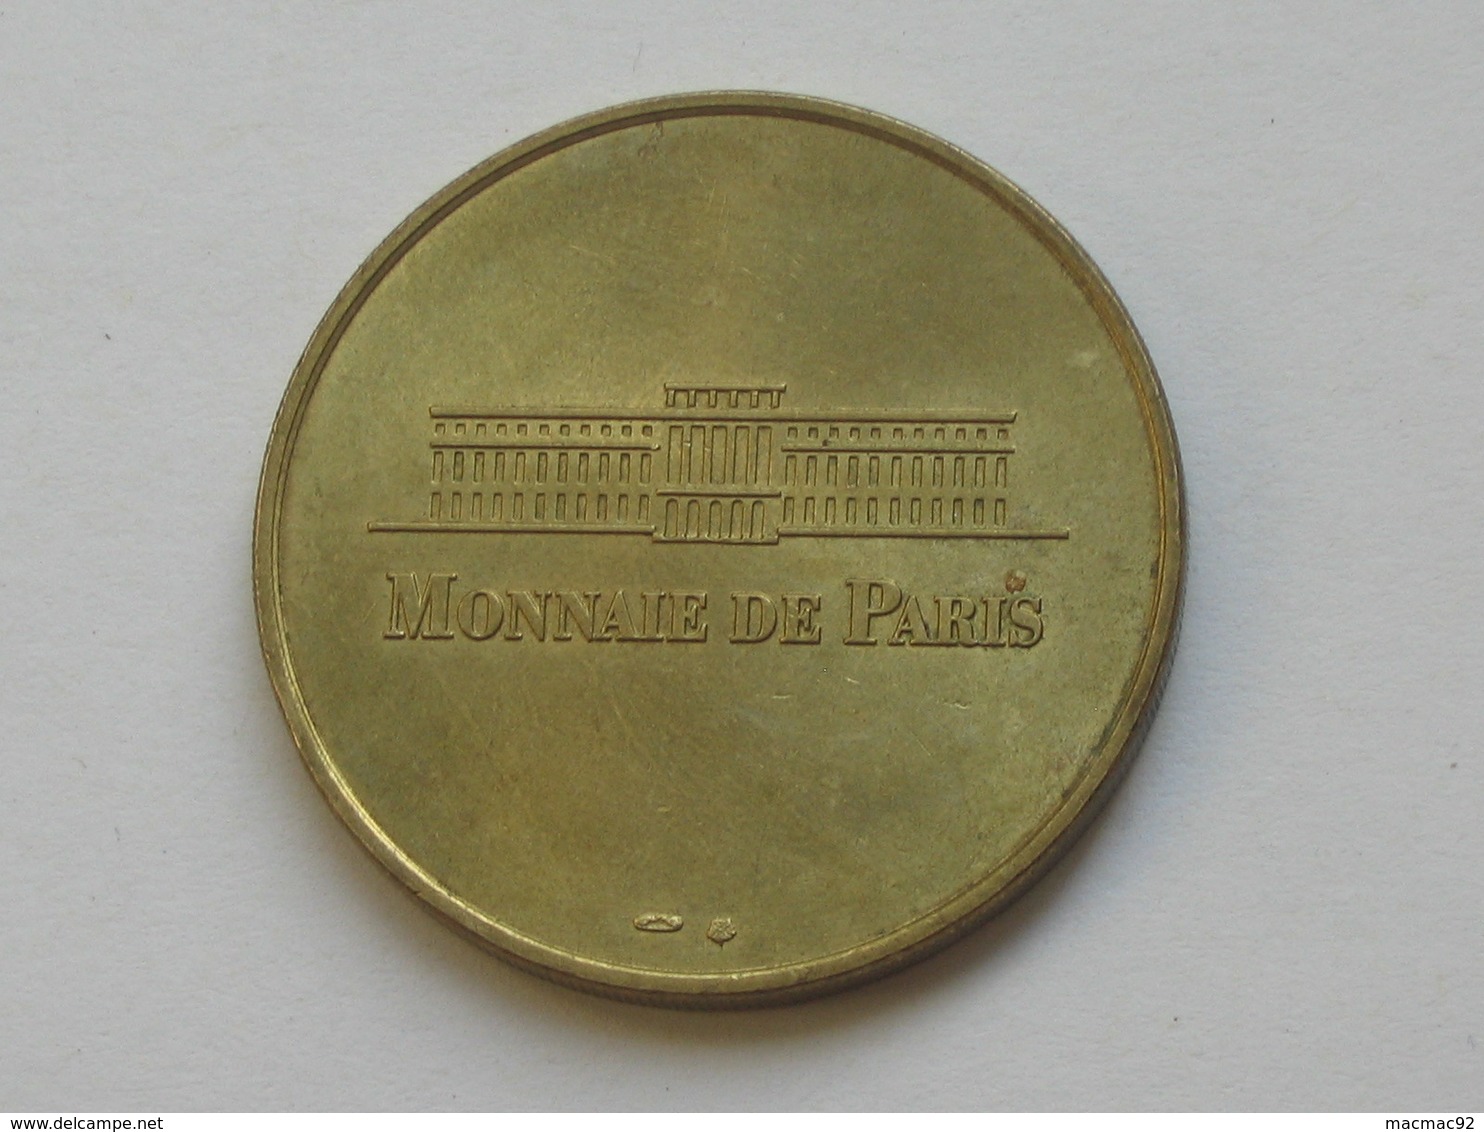 Monnaie De Paris  -CATHÉDRALE  NOTRE-DAME - Face Simple N°1-  1997-1998  **** EN ACHAT IMMEDIAT  **** - Non-datés